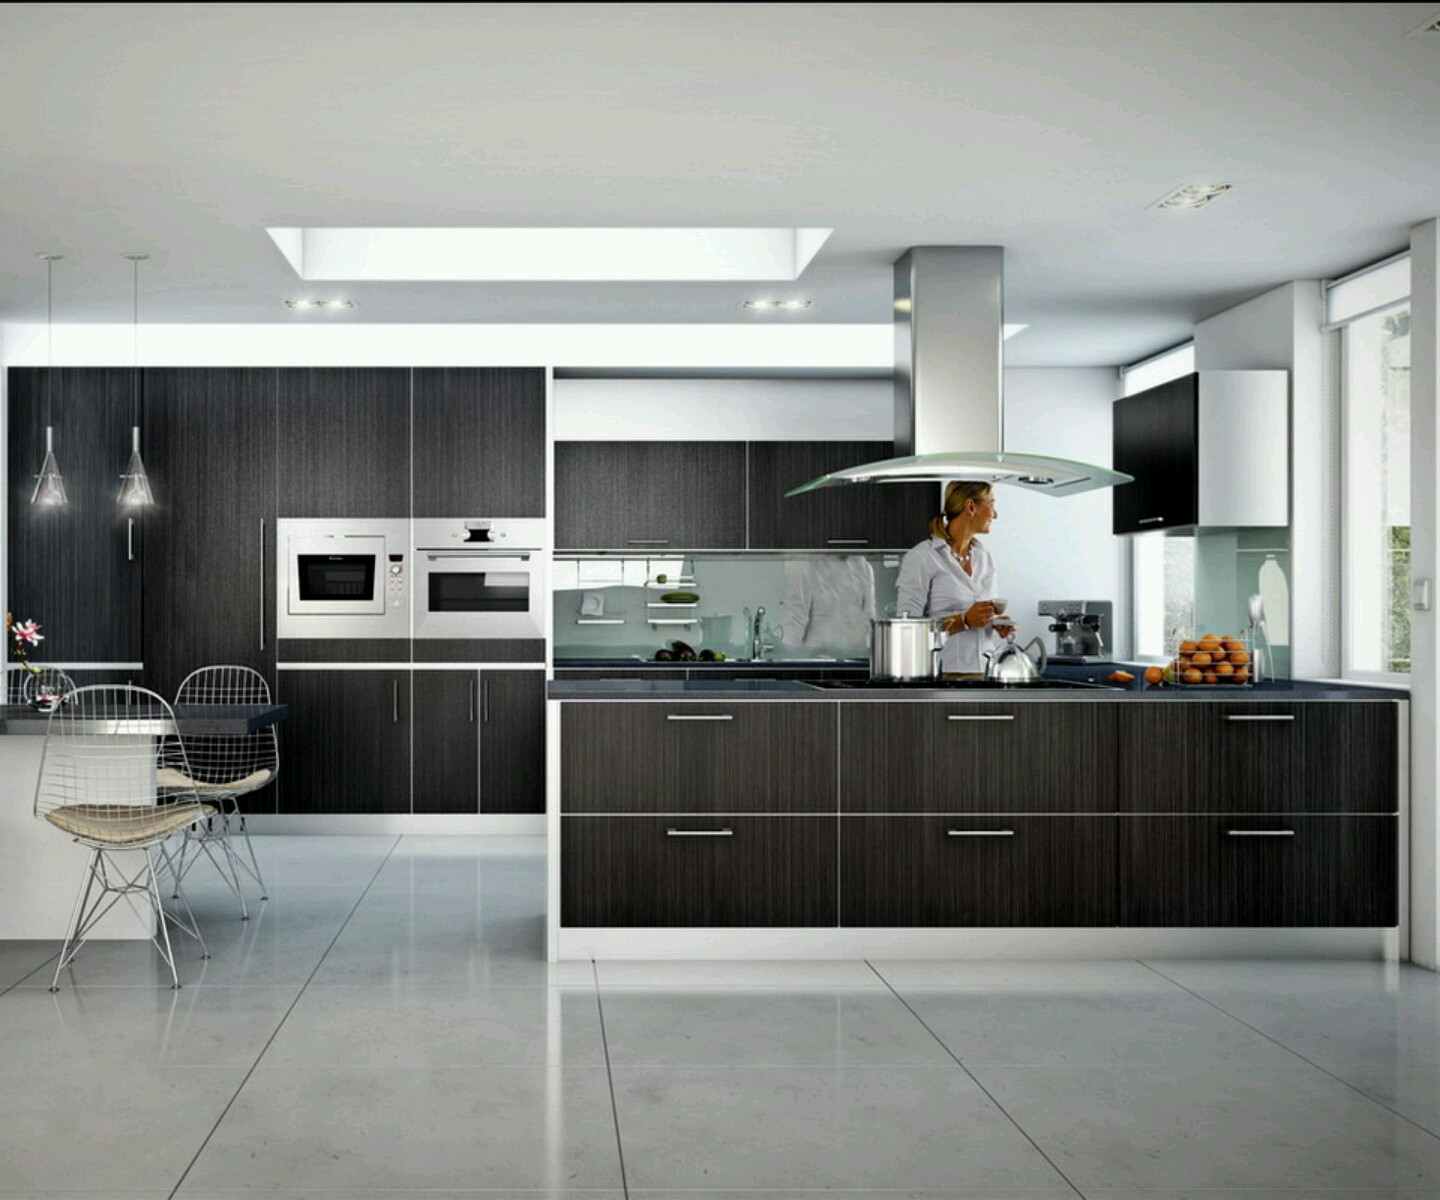 Kitchen Redesign Ideas
 30 Modern Kitchen Design Ideas – The WoW Style